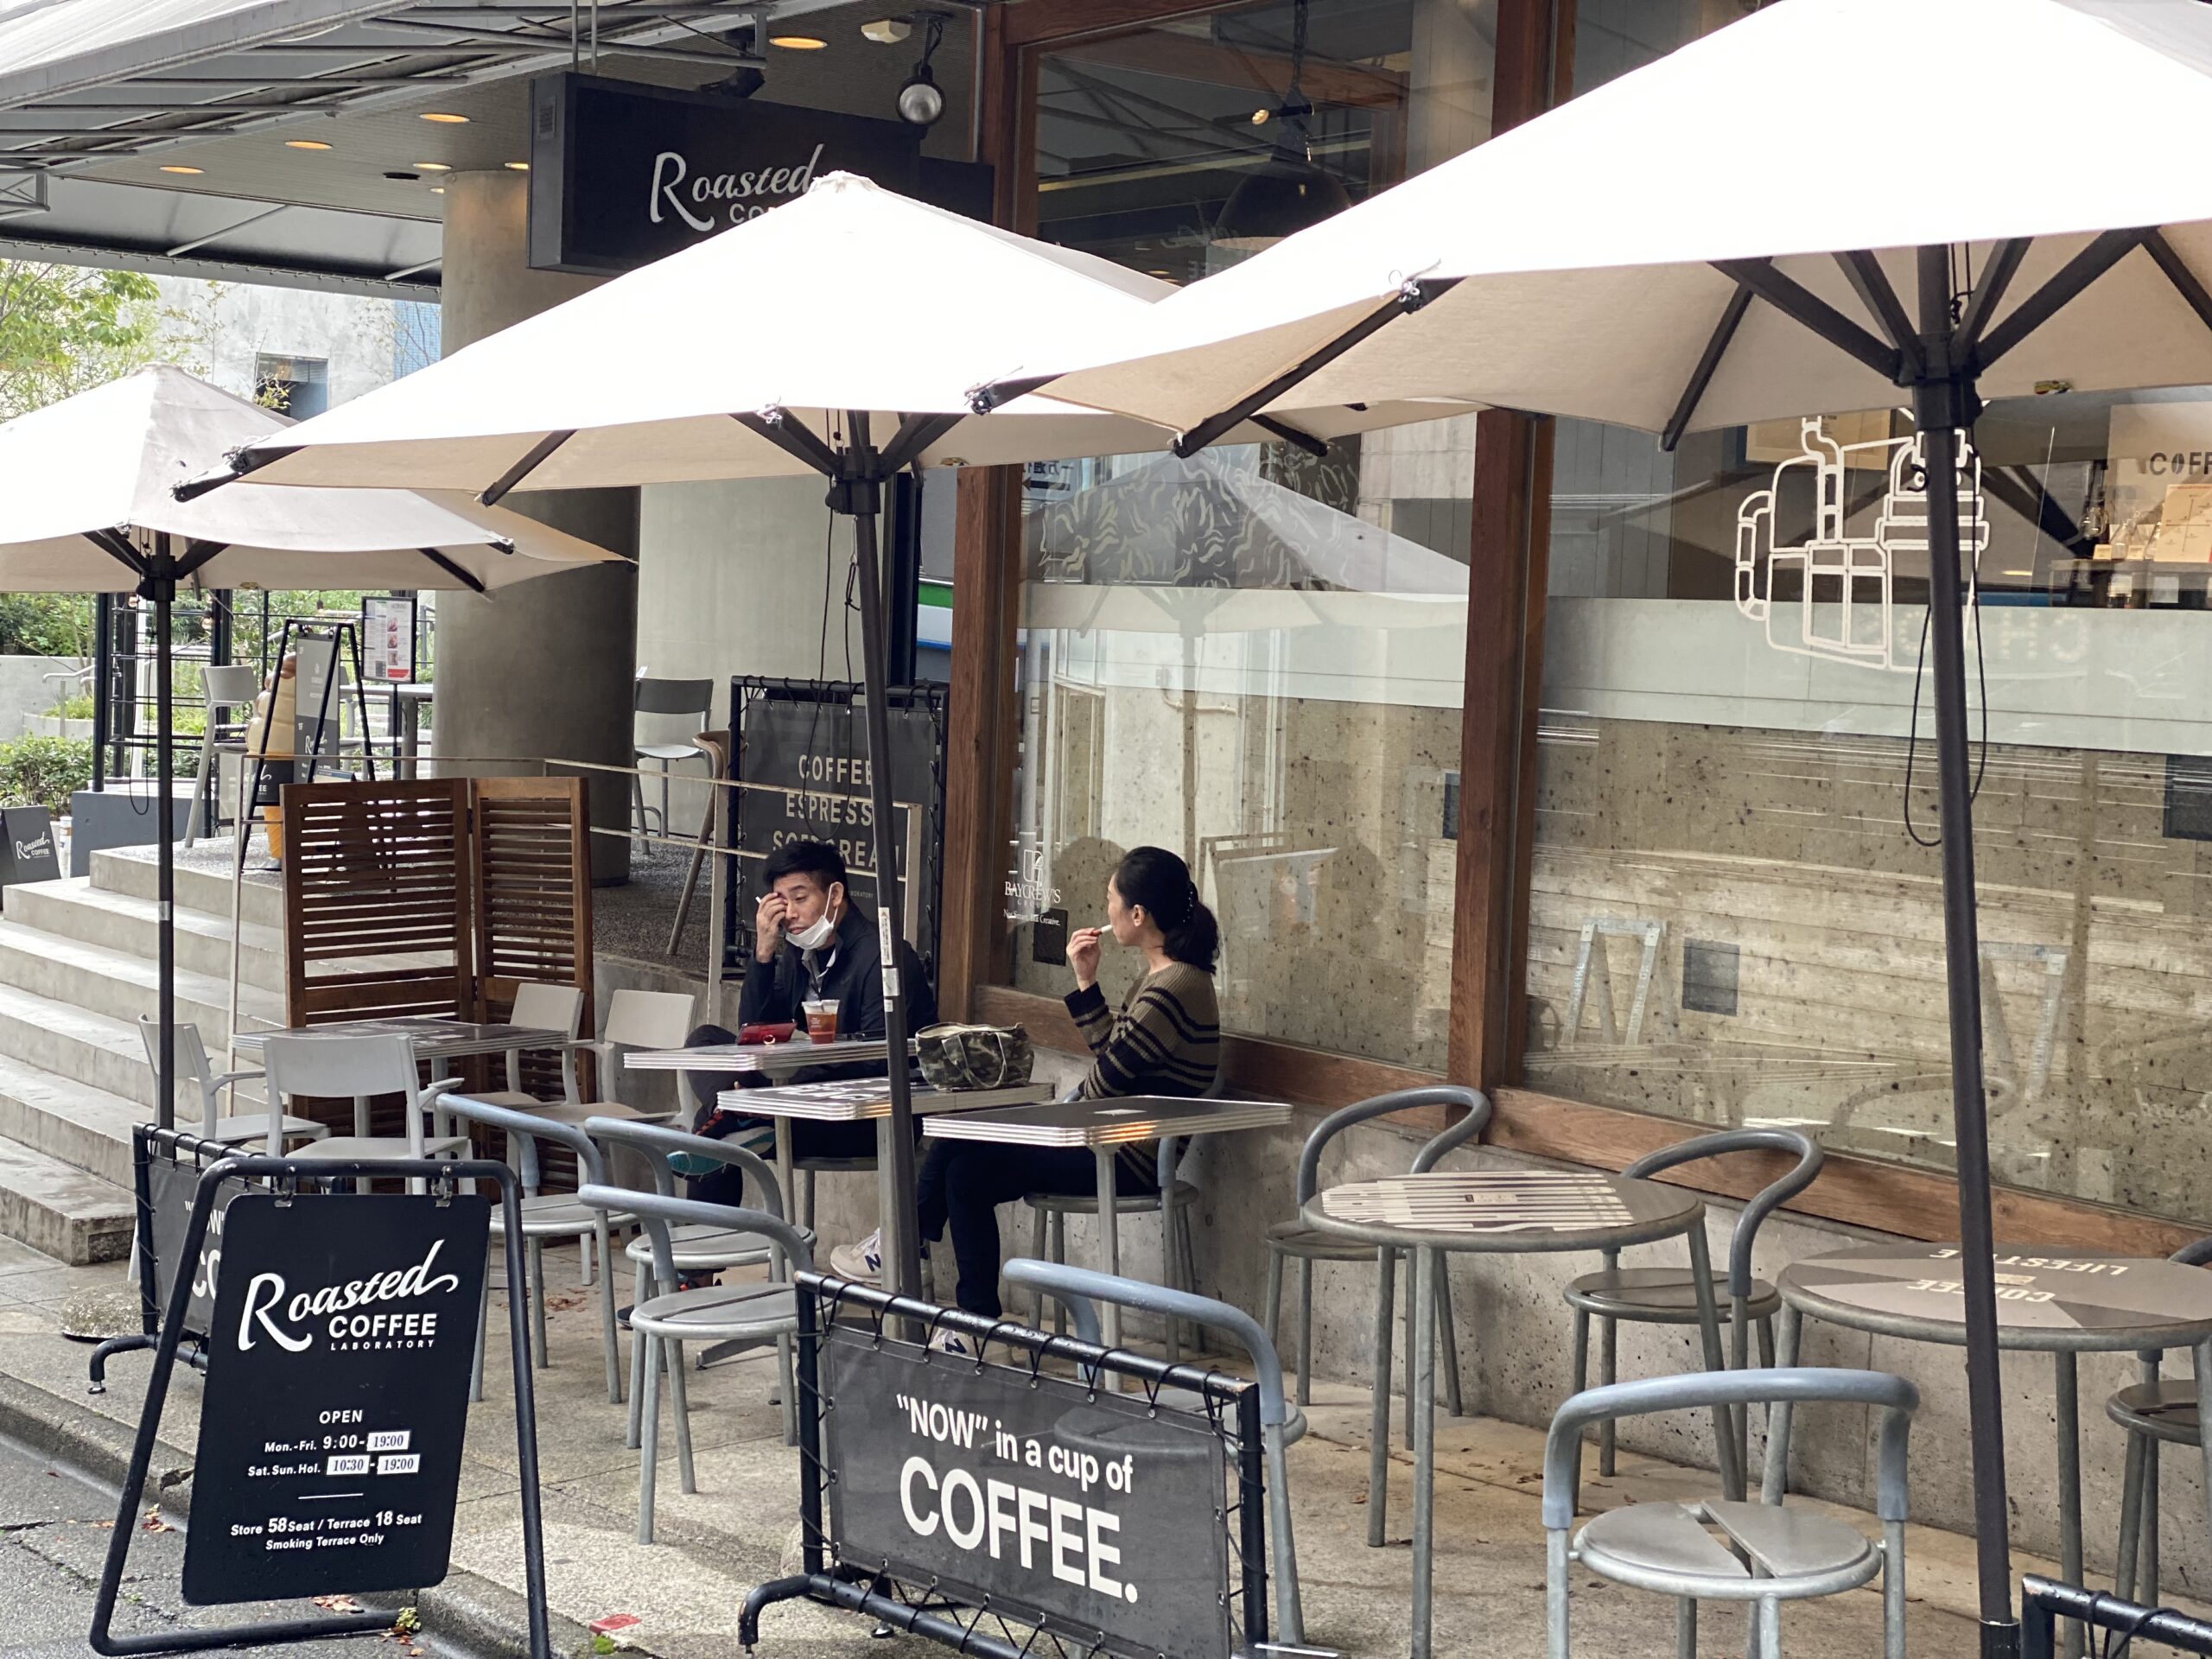 ブルートラベルエンジニア パソコン作業（プログラミング学習環境）におすすめのカフェ|渋谷 Roasted COFFEE LABORATORY（ローステッド コーヒー ラボラトリー）